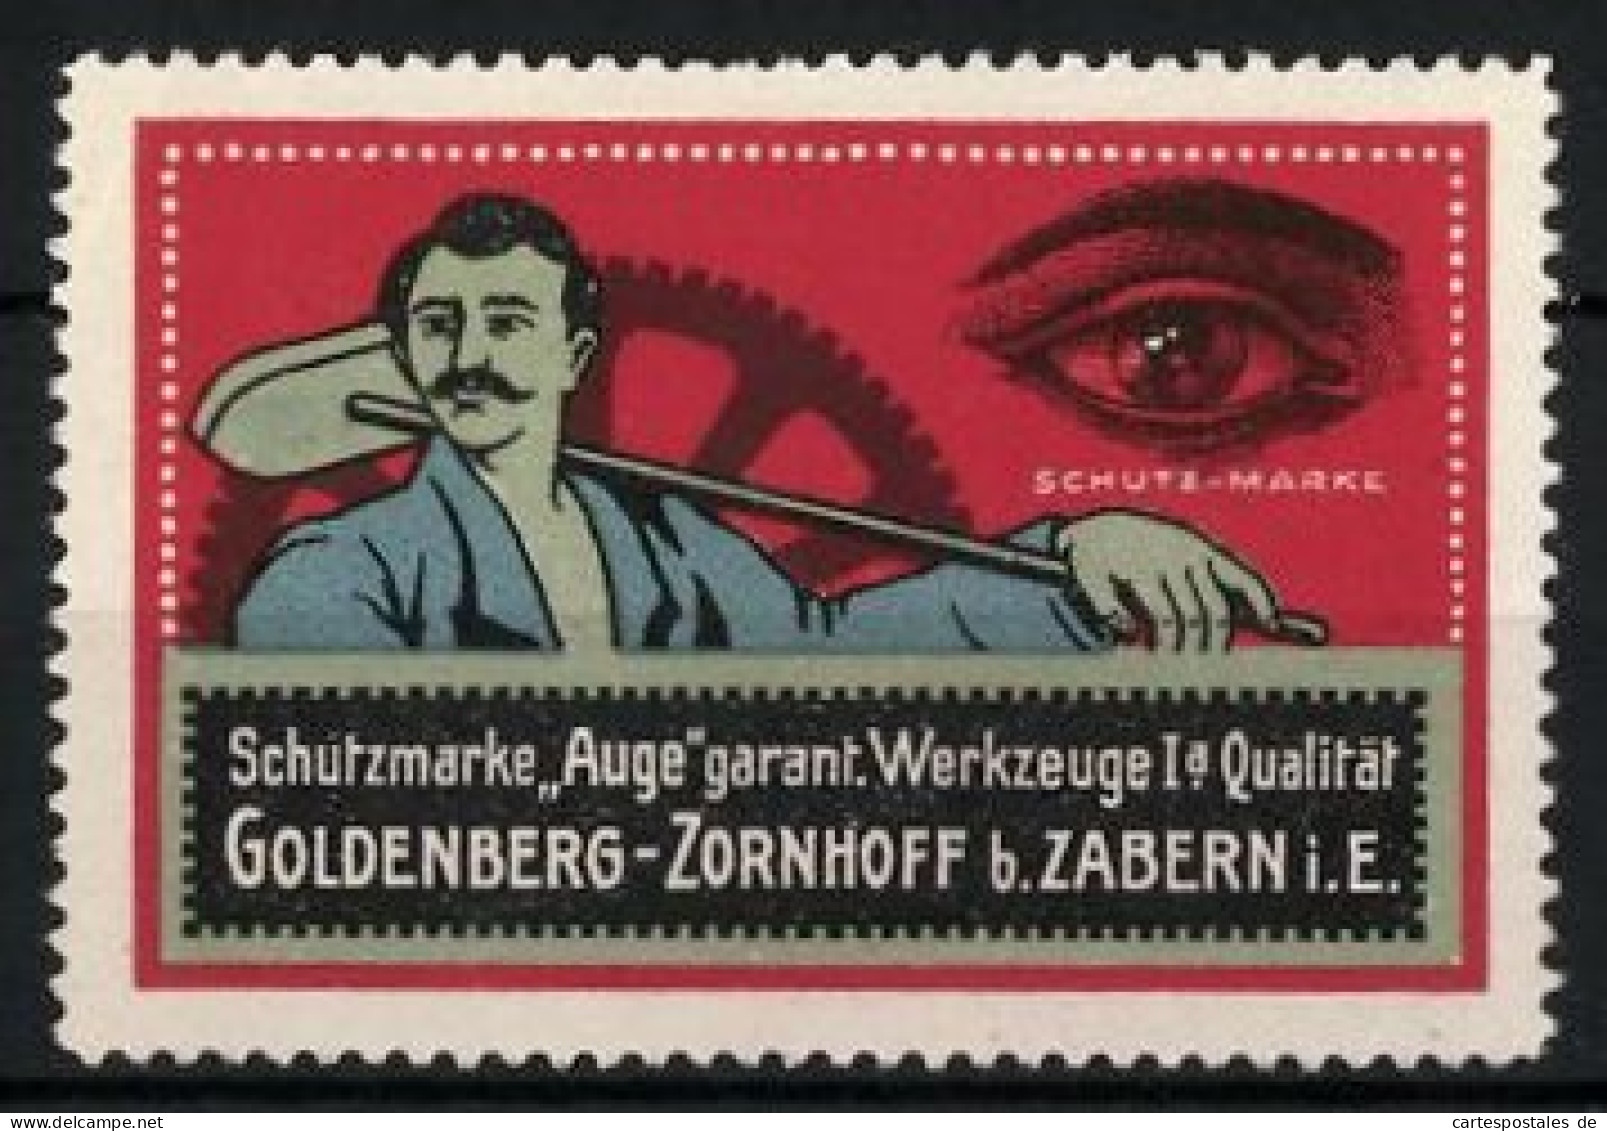 Reklamemarke Werkzeugfabrik Goldenberg-Zornhoff, Zabern I. E., Schutzmarke Auge, Werkzeuge Mit Qualität  - Cinderellas